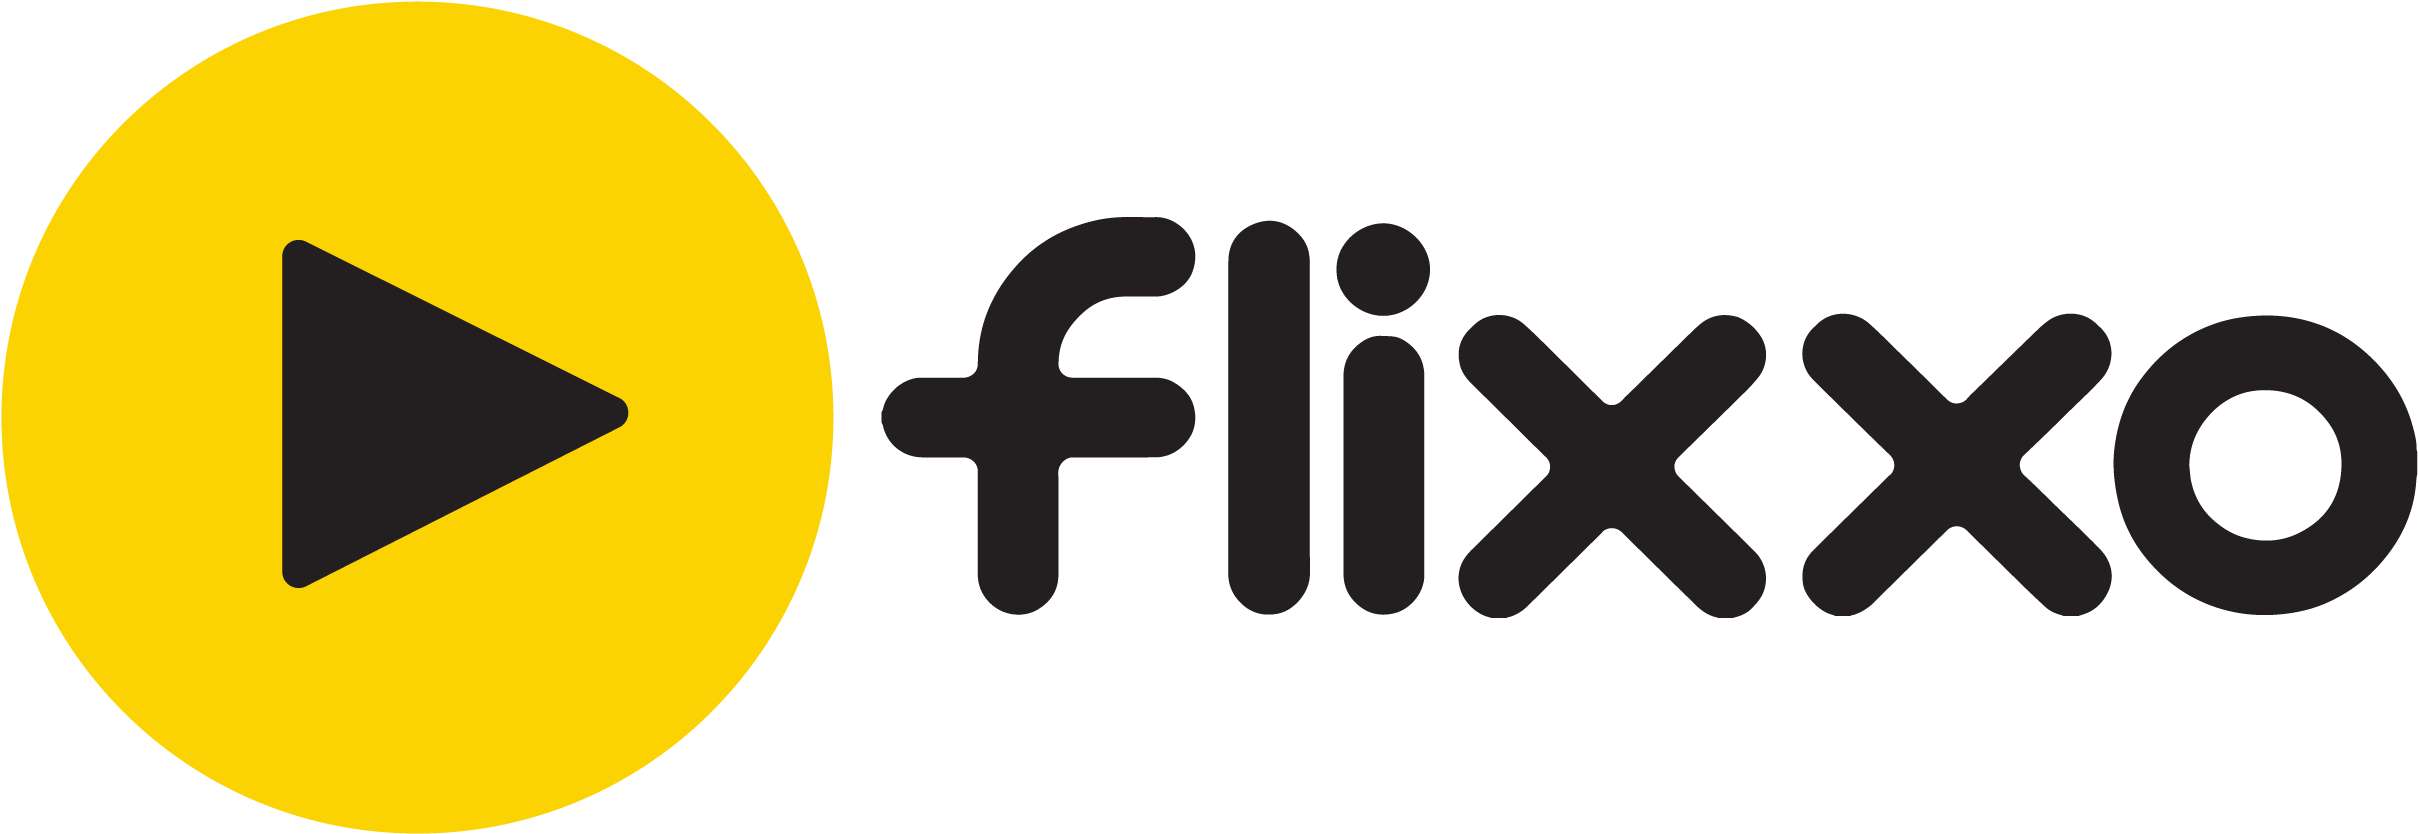 Flixxo - Tech Conference Logo (2510x912)